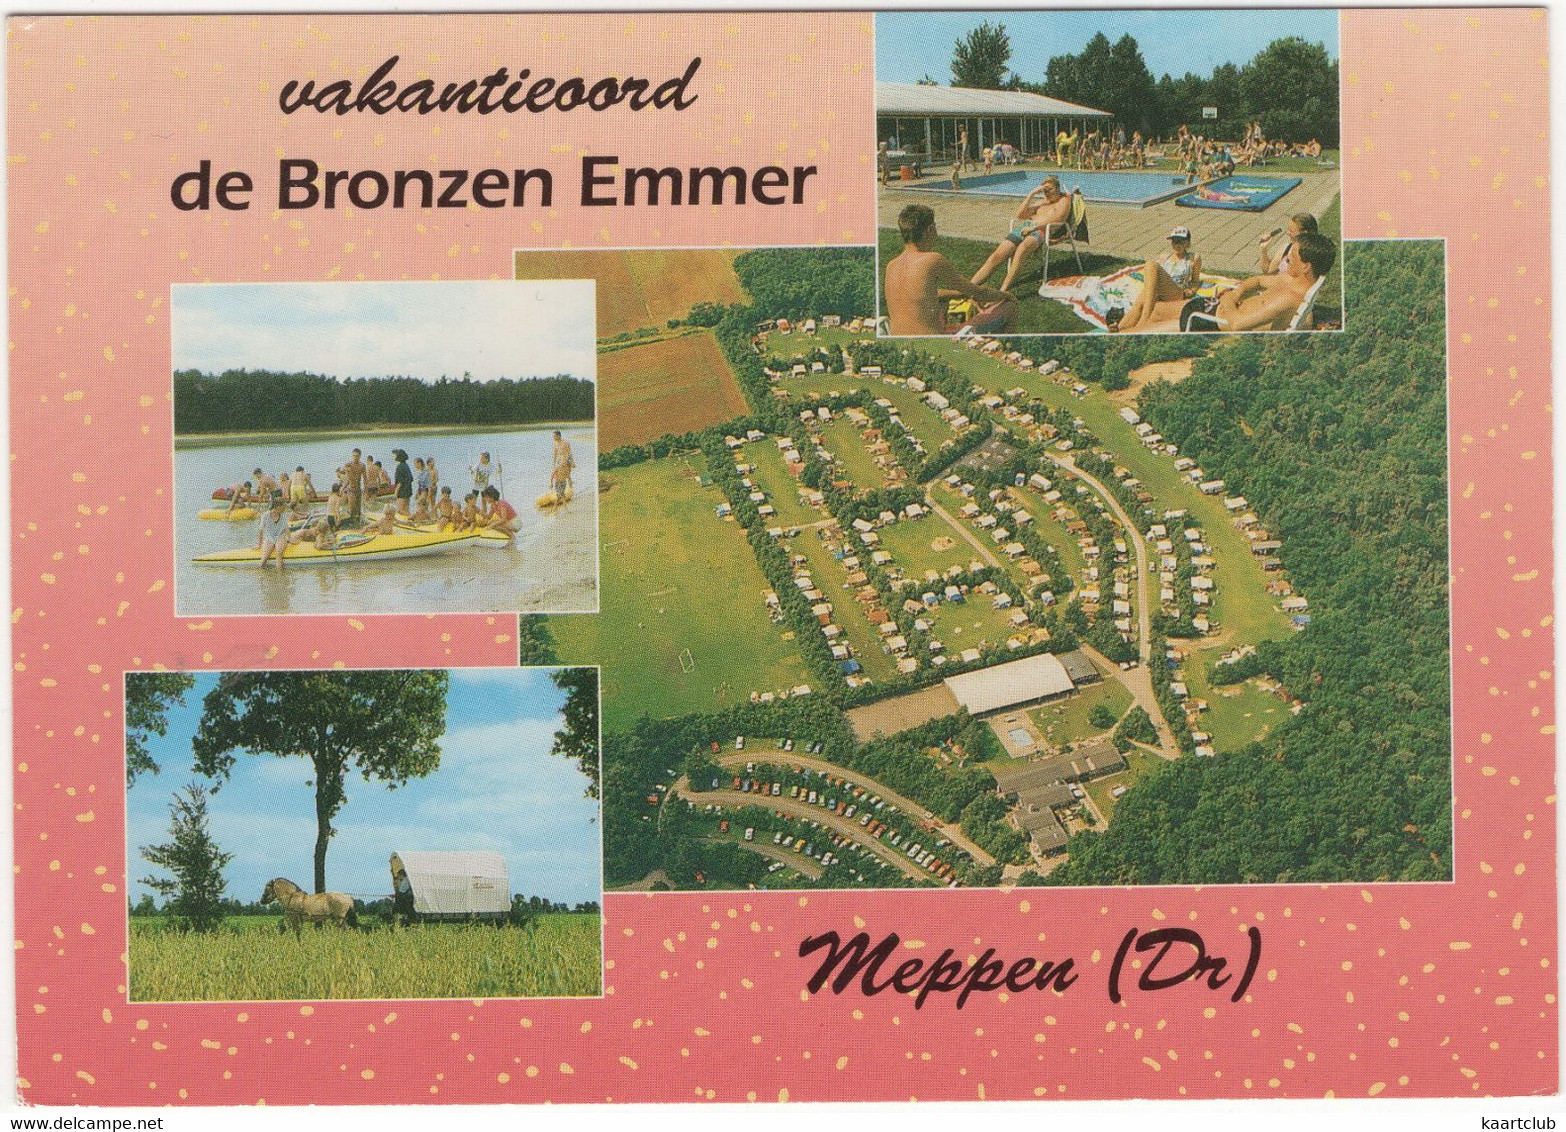 Meppen (Dr) - Vakantieoord 'de Bronzen Emmer' - Mepperstraat 41 - (Camping, Zwembad, Kano's, Huifkar) - Coevorden